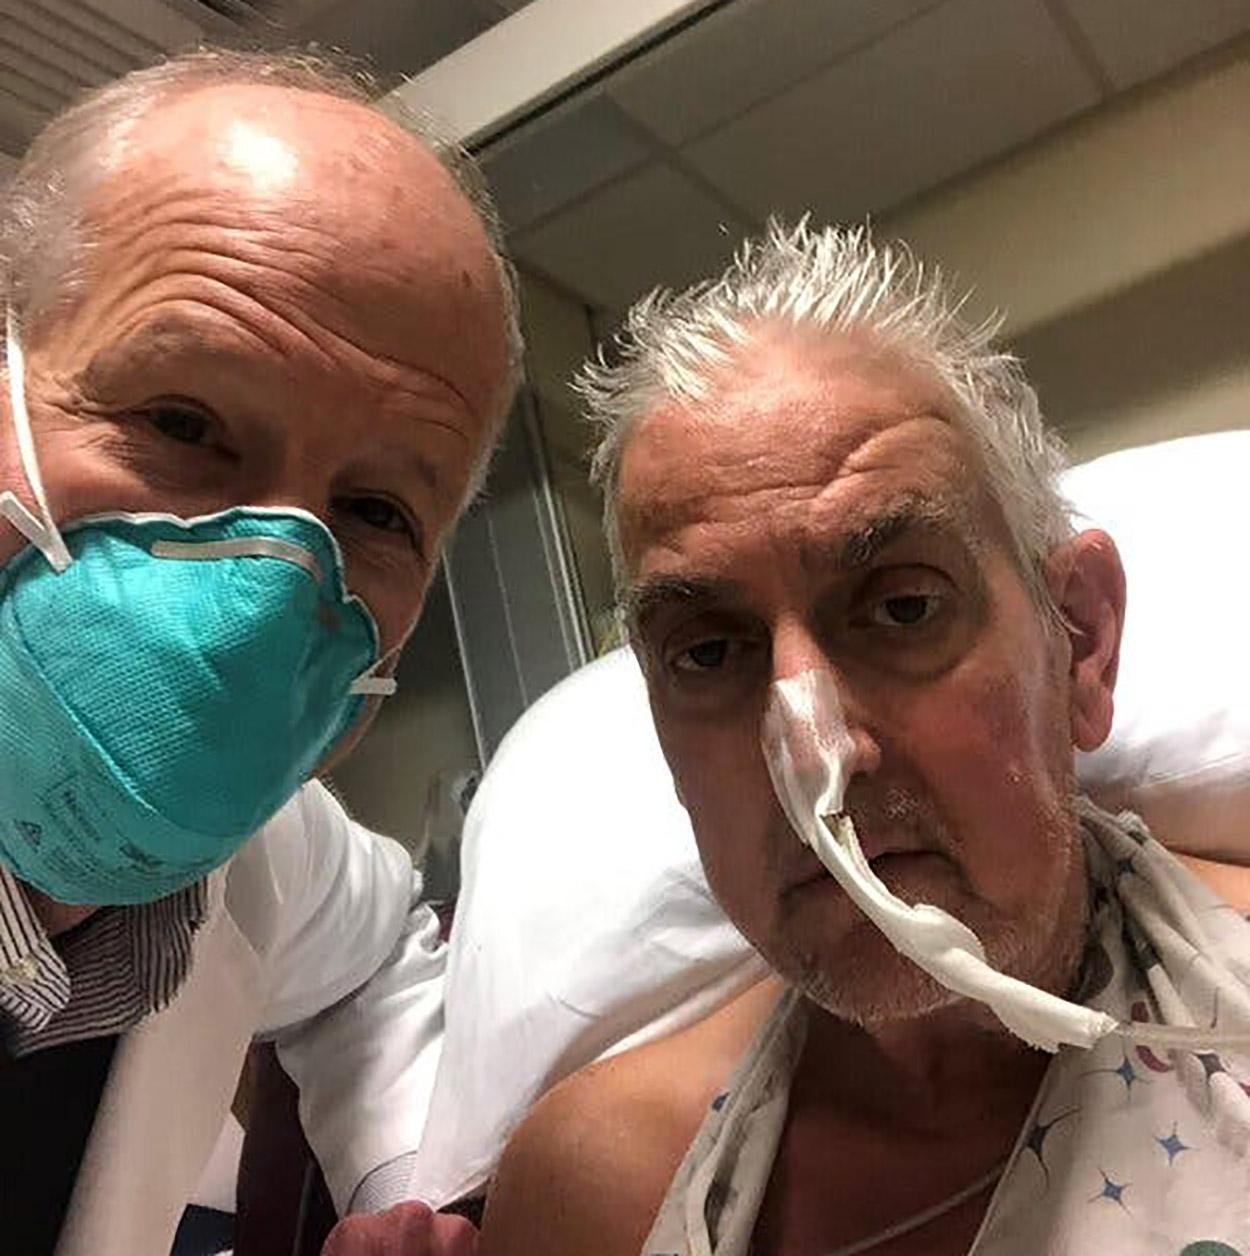 Dr. Griffith e David Bennett após a cirurgia. (Fonte: Faculdade de Medicina da Universidade de Maryland/Divulgação)